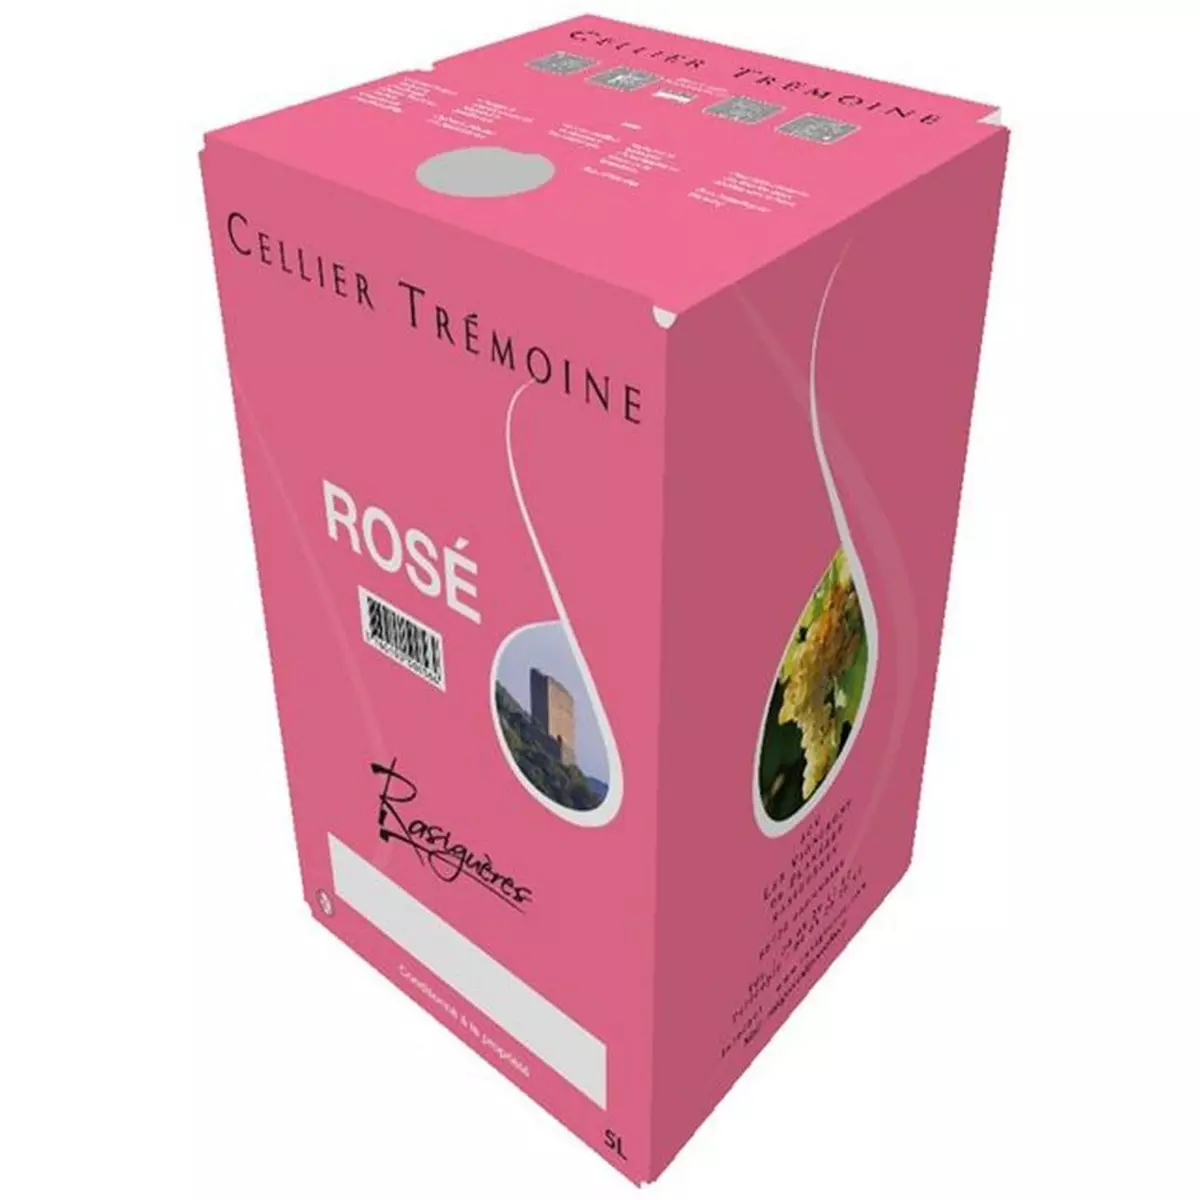 AOP Côtes-du-Roussillon Cellier Trémoine rosé bib Grand Format 5l